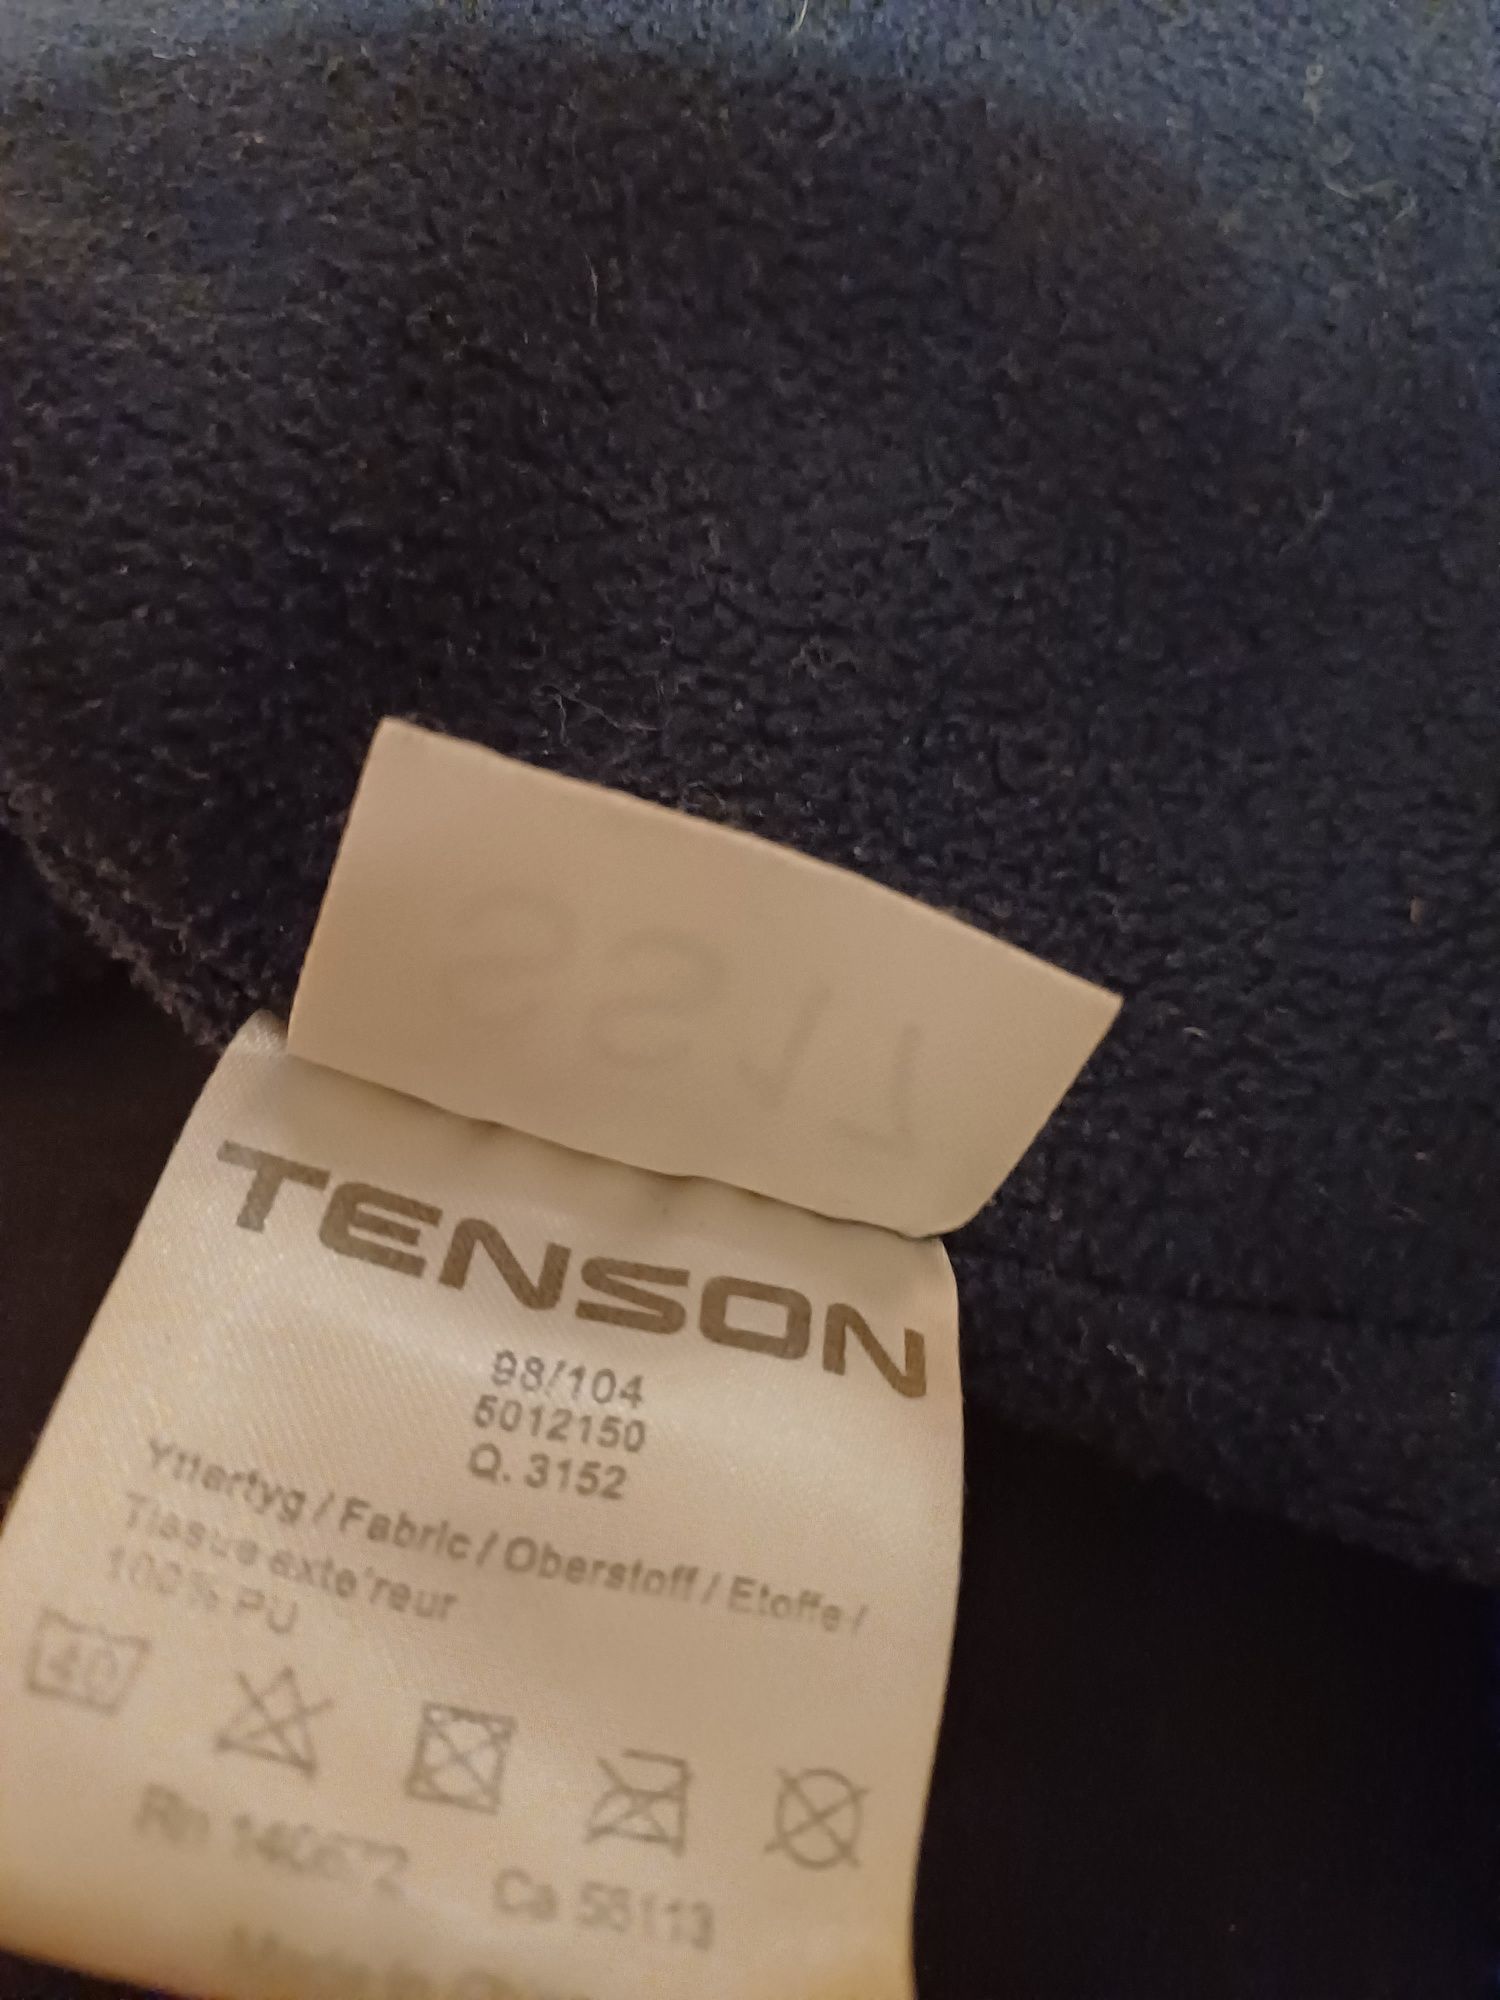 Spodnie gumowane, ocieplane rozmiar 98/104 firmy Tenson.